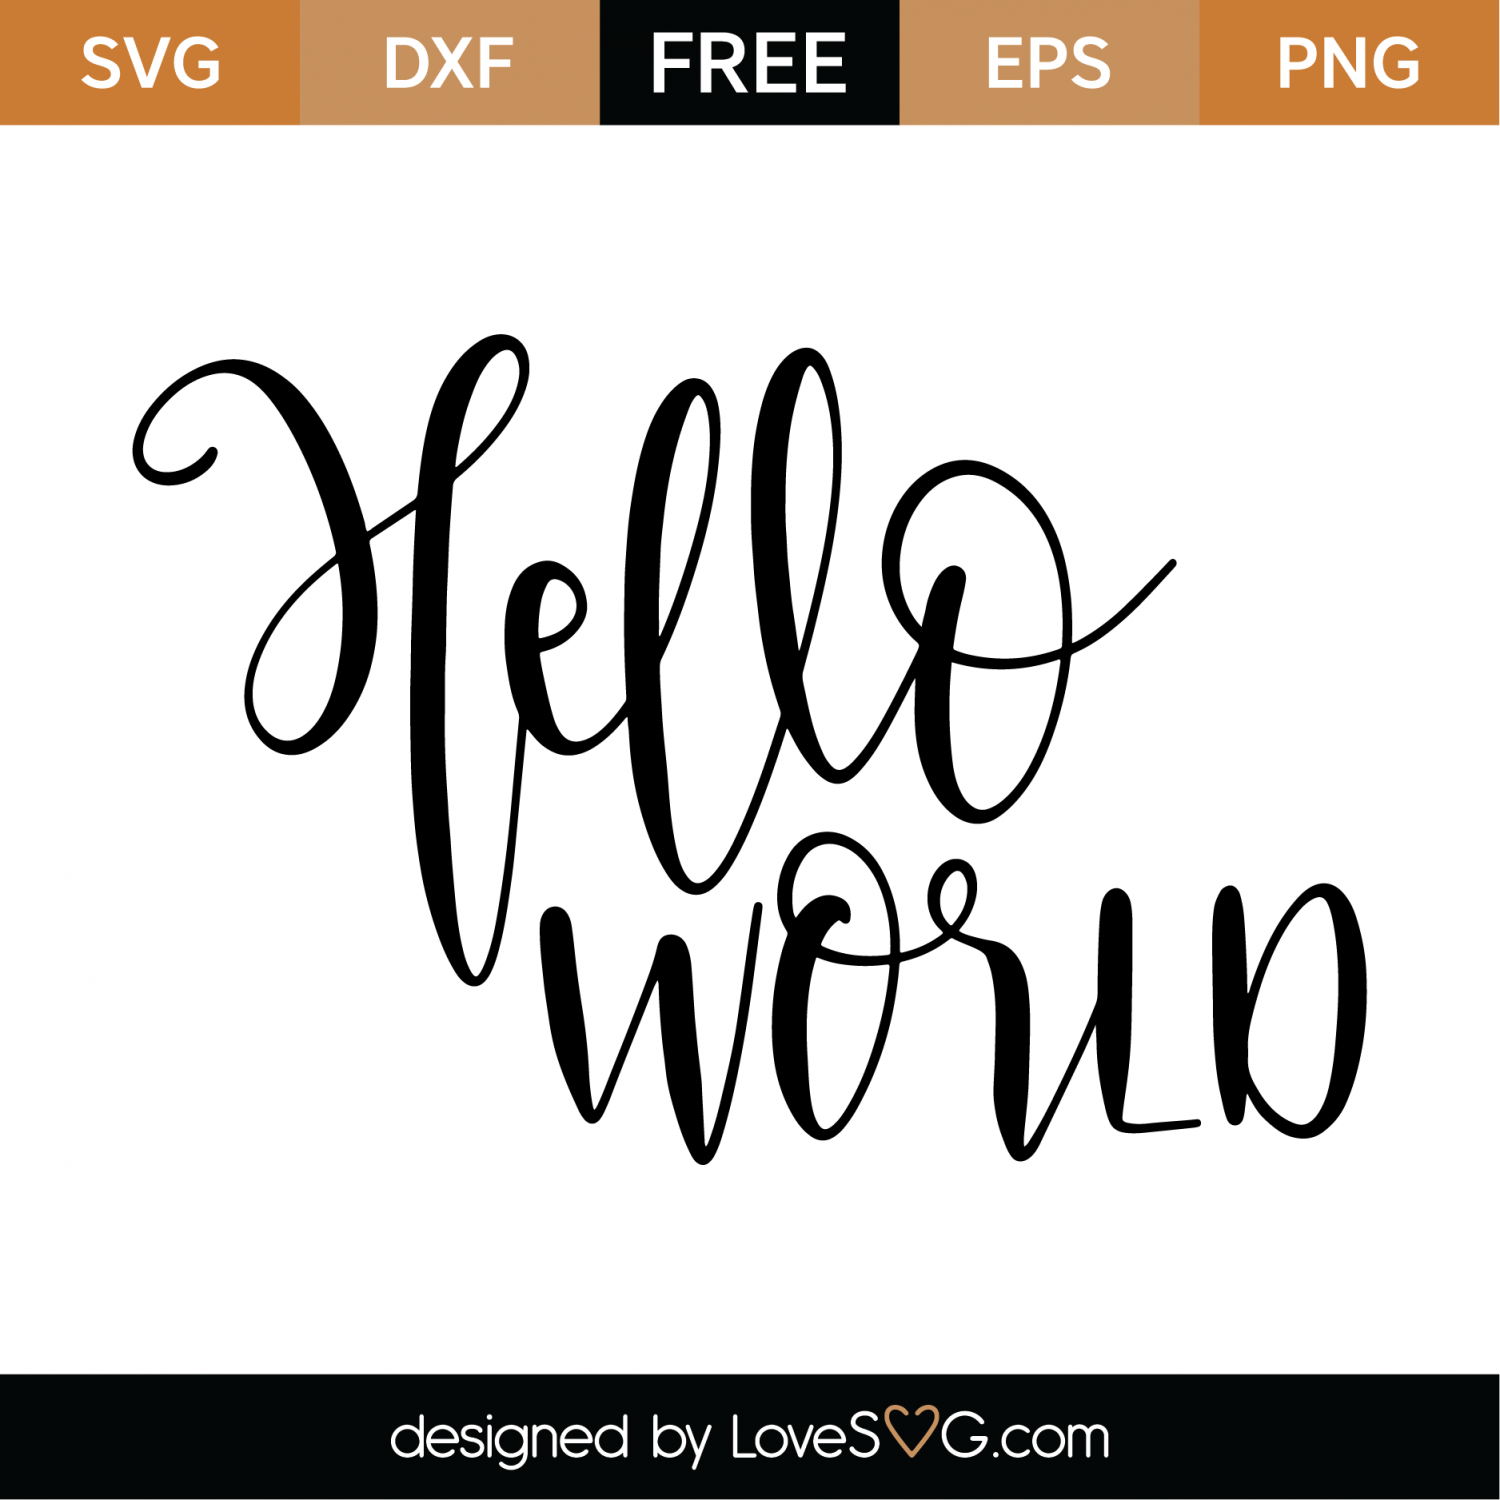 Download Free Hello World SVG Cut File | Lovesvg.com